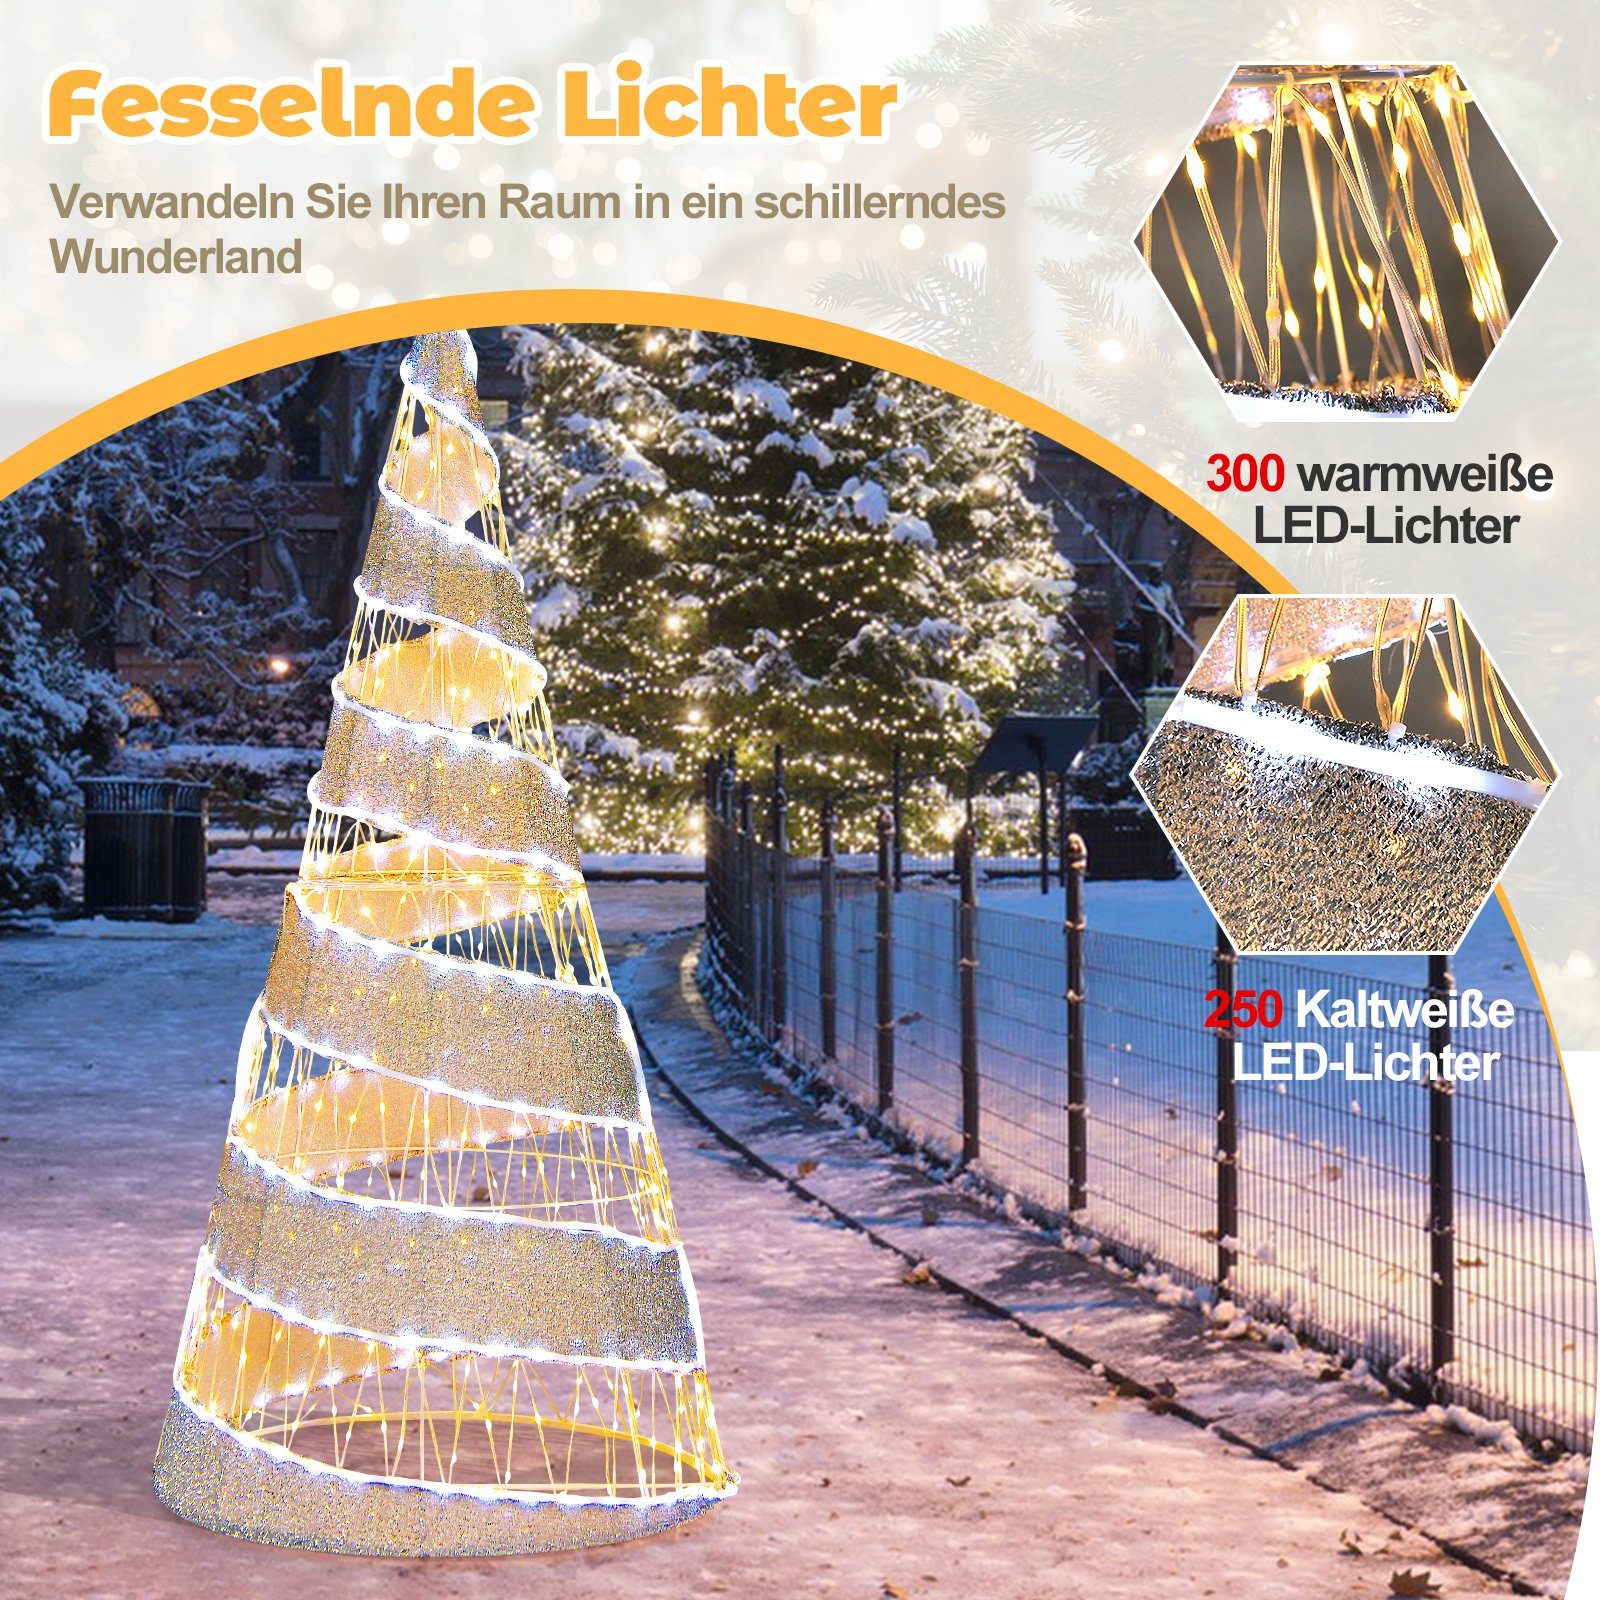 Weihnachtsbaum, 155cm, COSTWAY klappbar Weihnachtsdeko Künstlicher 550 LEDs